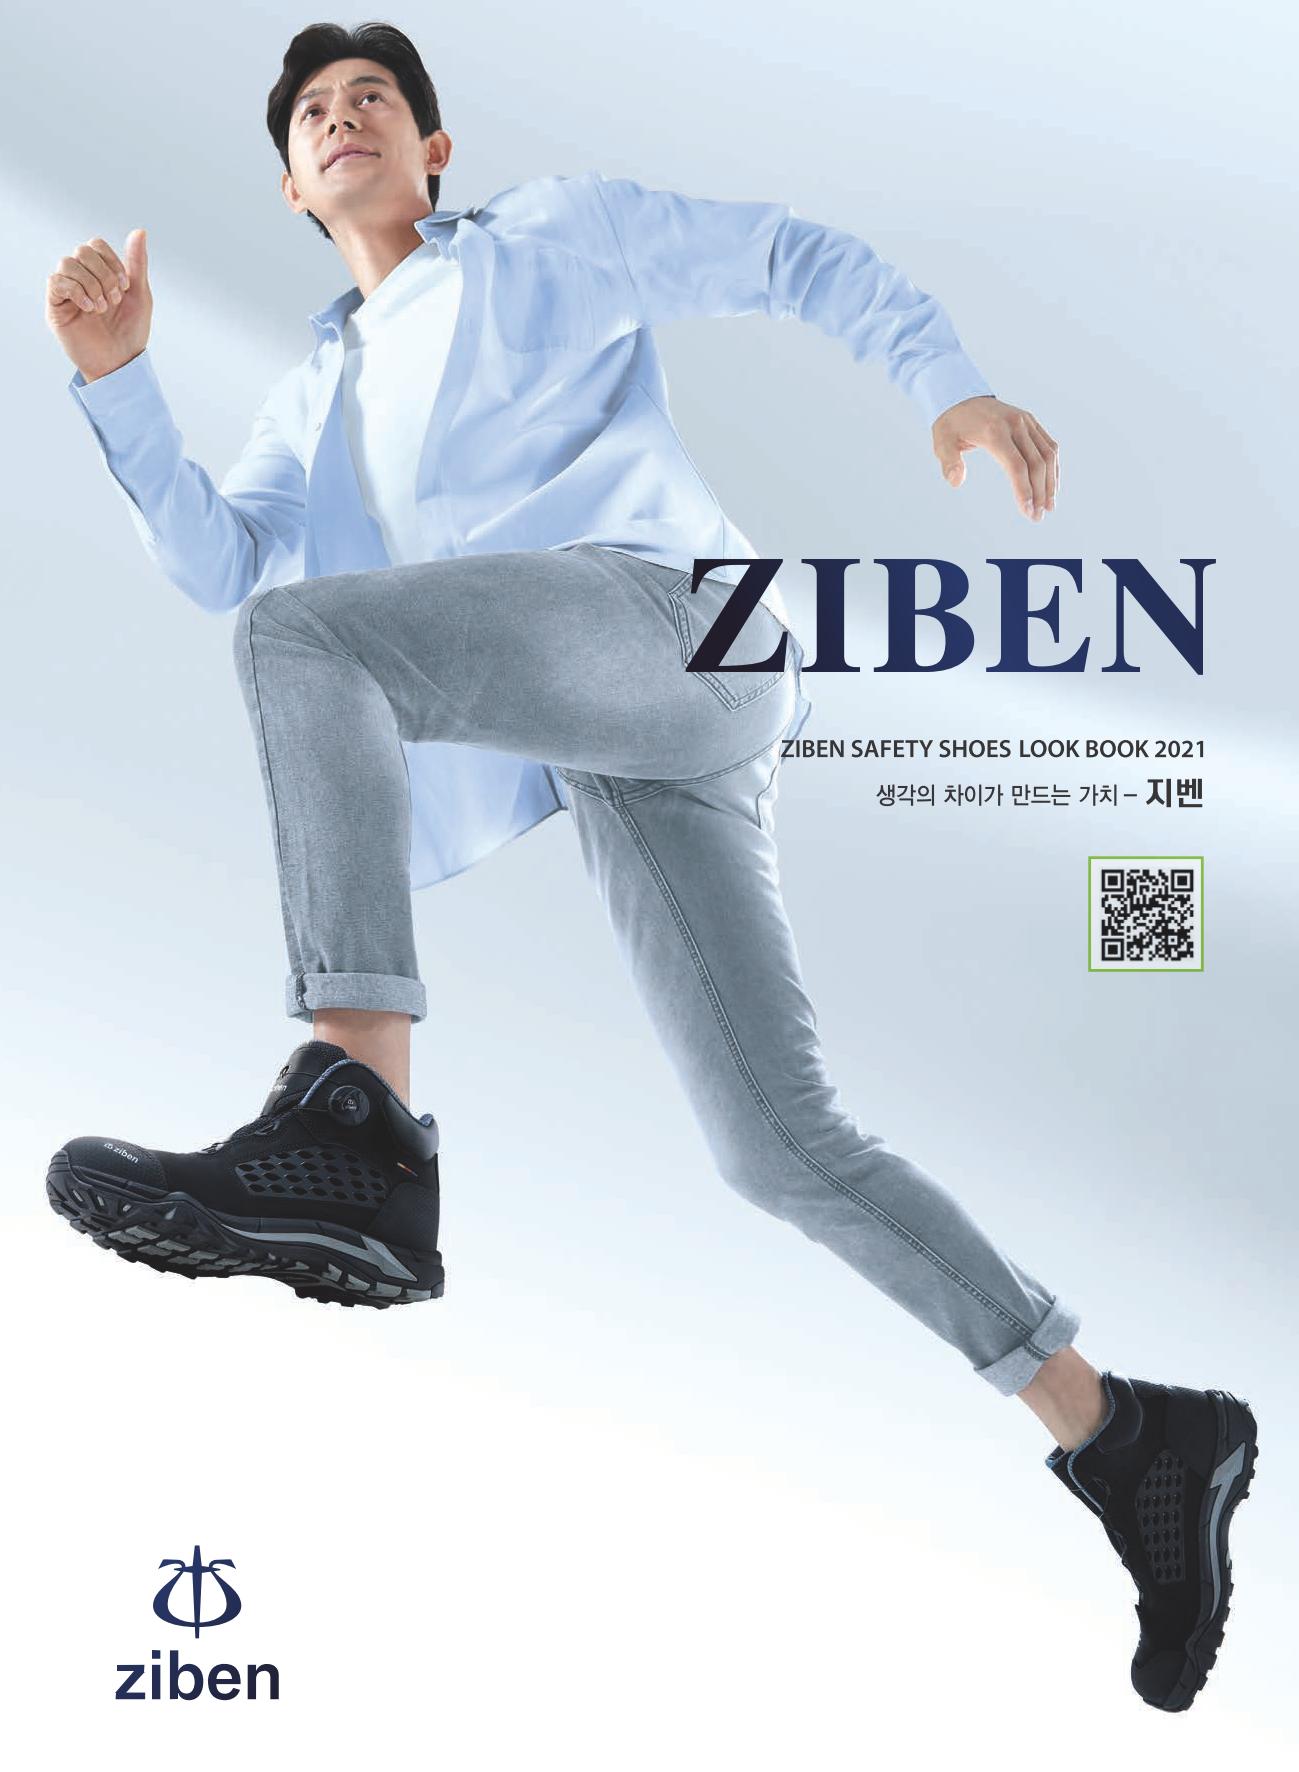 Diễn đàn rao vặt: Giày bảo hộ Ziben tại thị trường Việt Nam Catalog-giay-ziben-2021_01